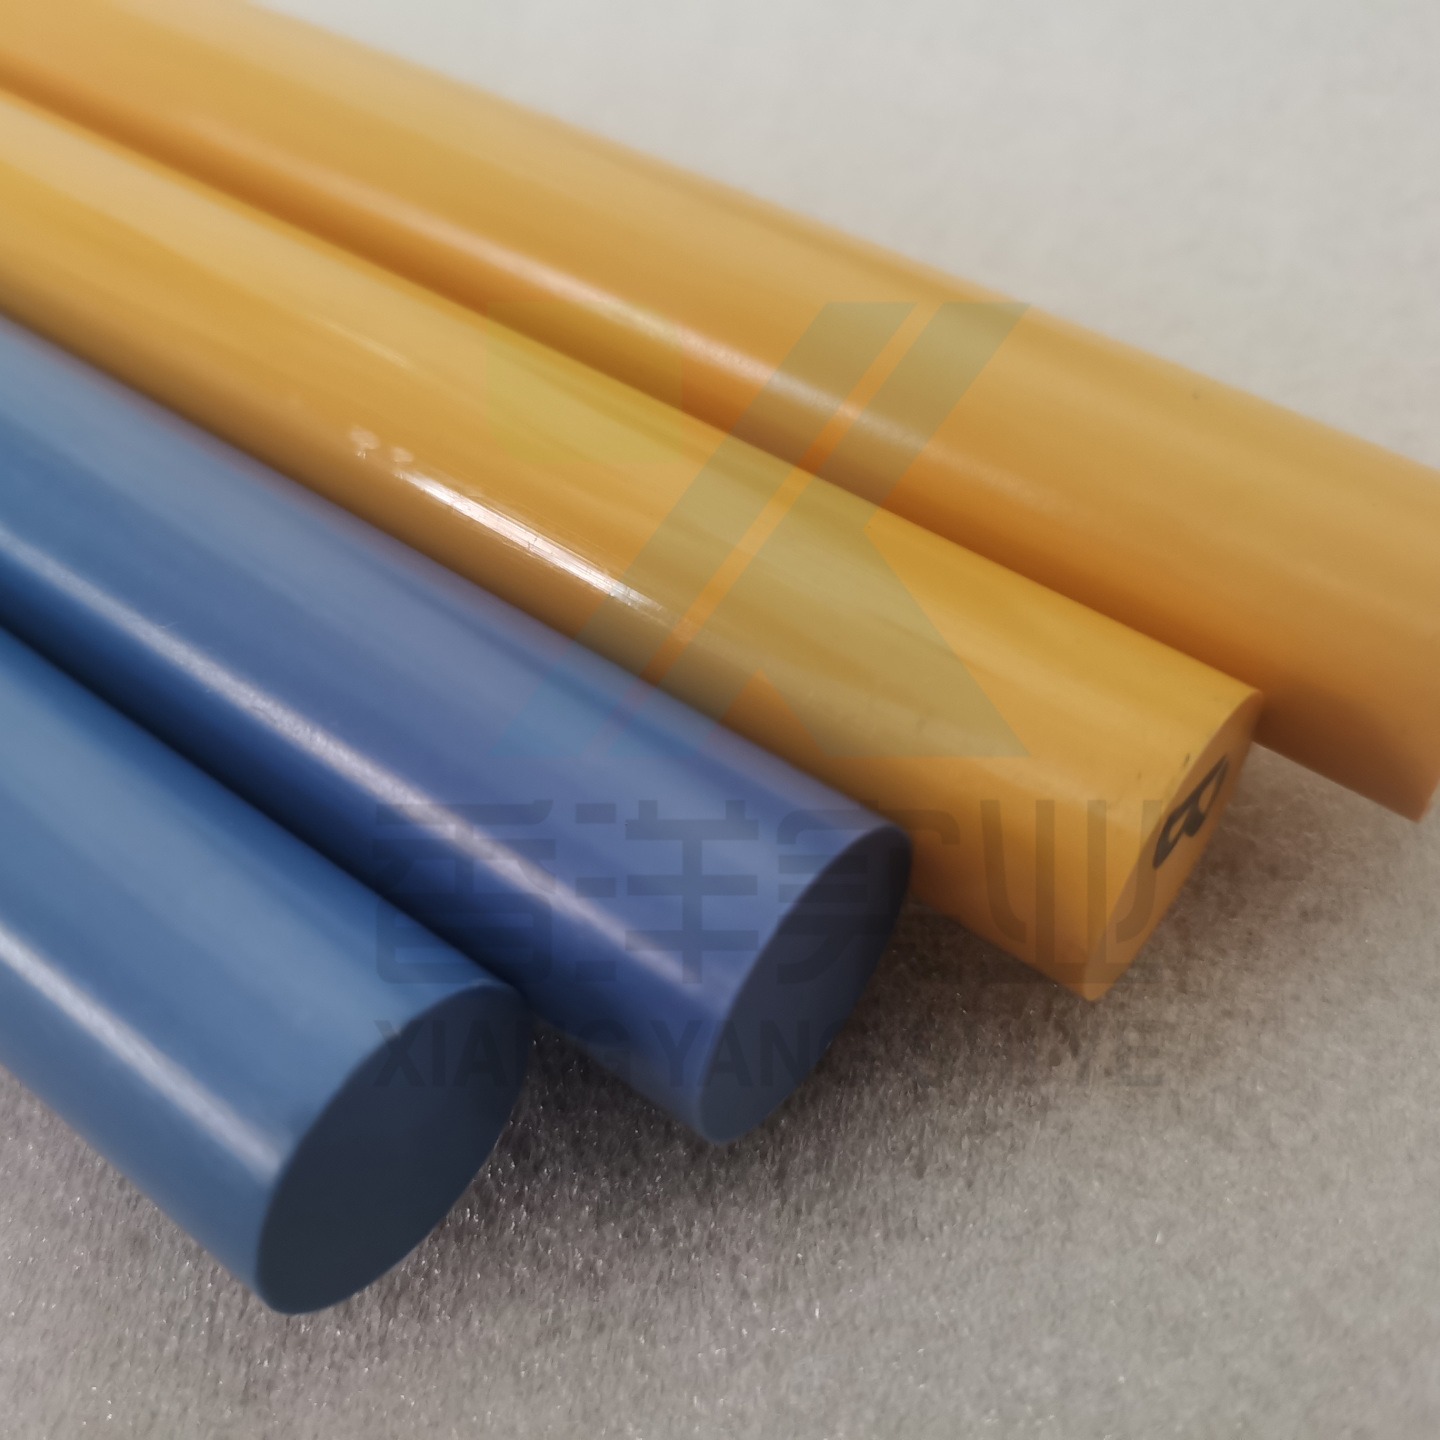 黄色 蓝色塑料棒 PPSU棒耐热耐氧化 蓝色PPSU棒医用手柄 黄色密封圈图片